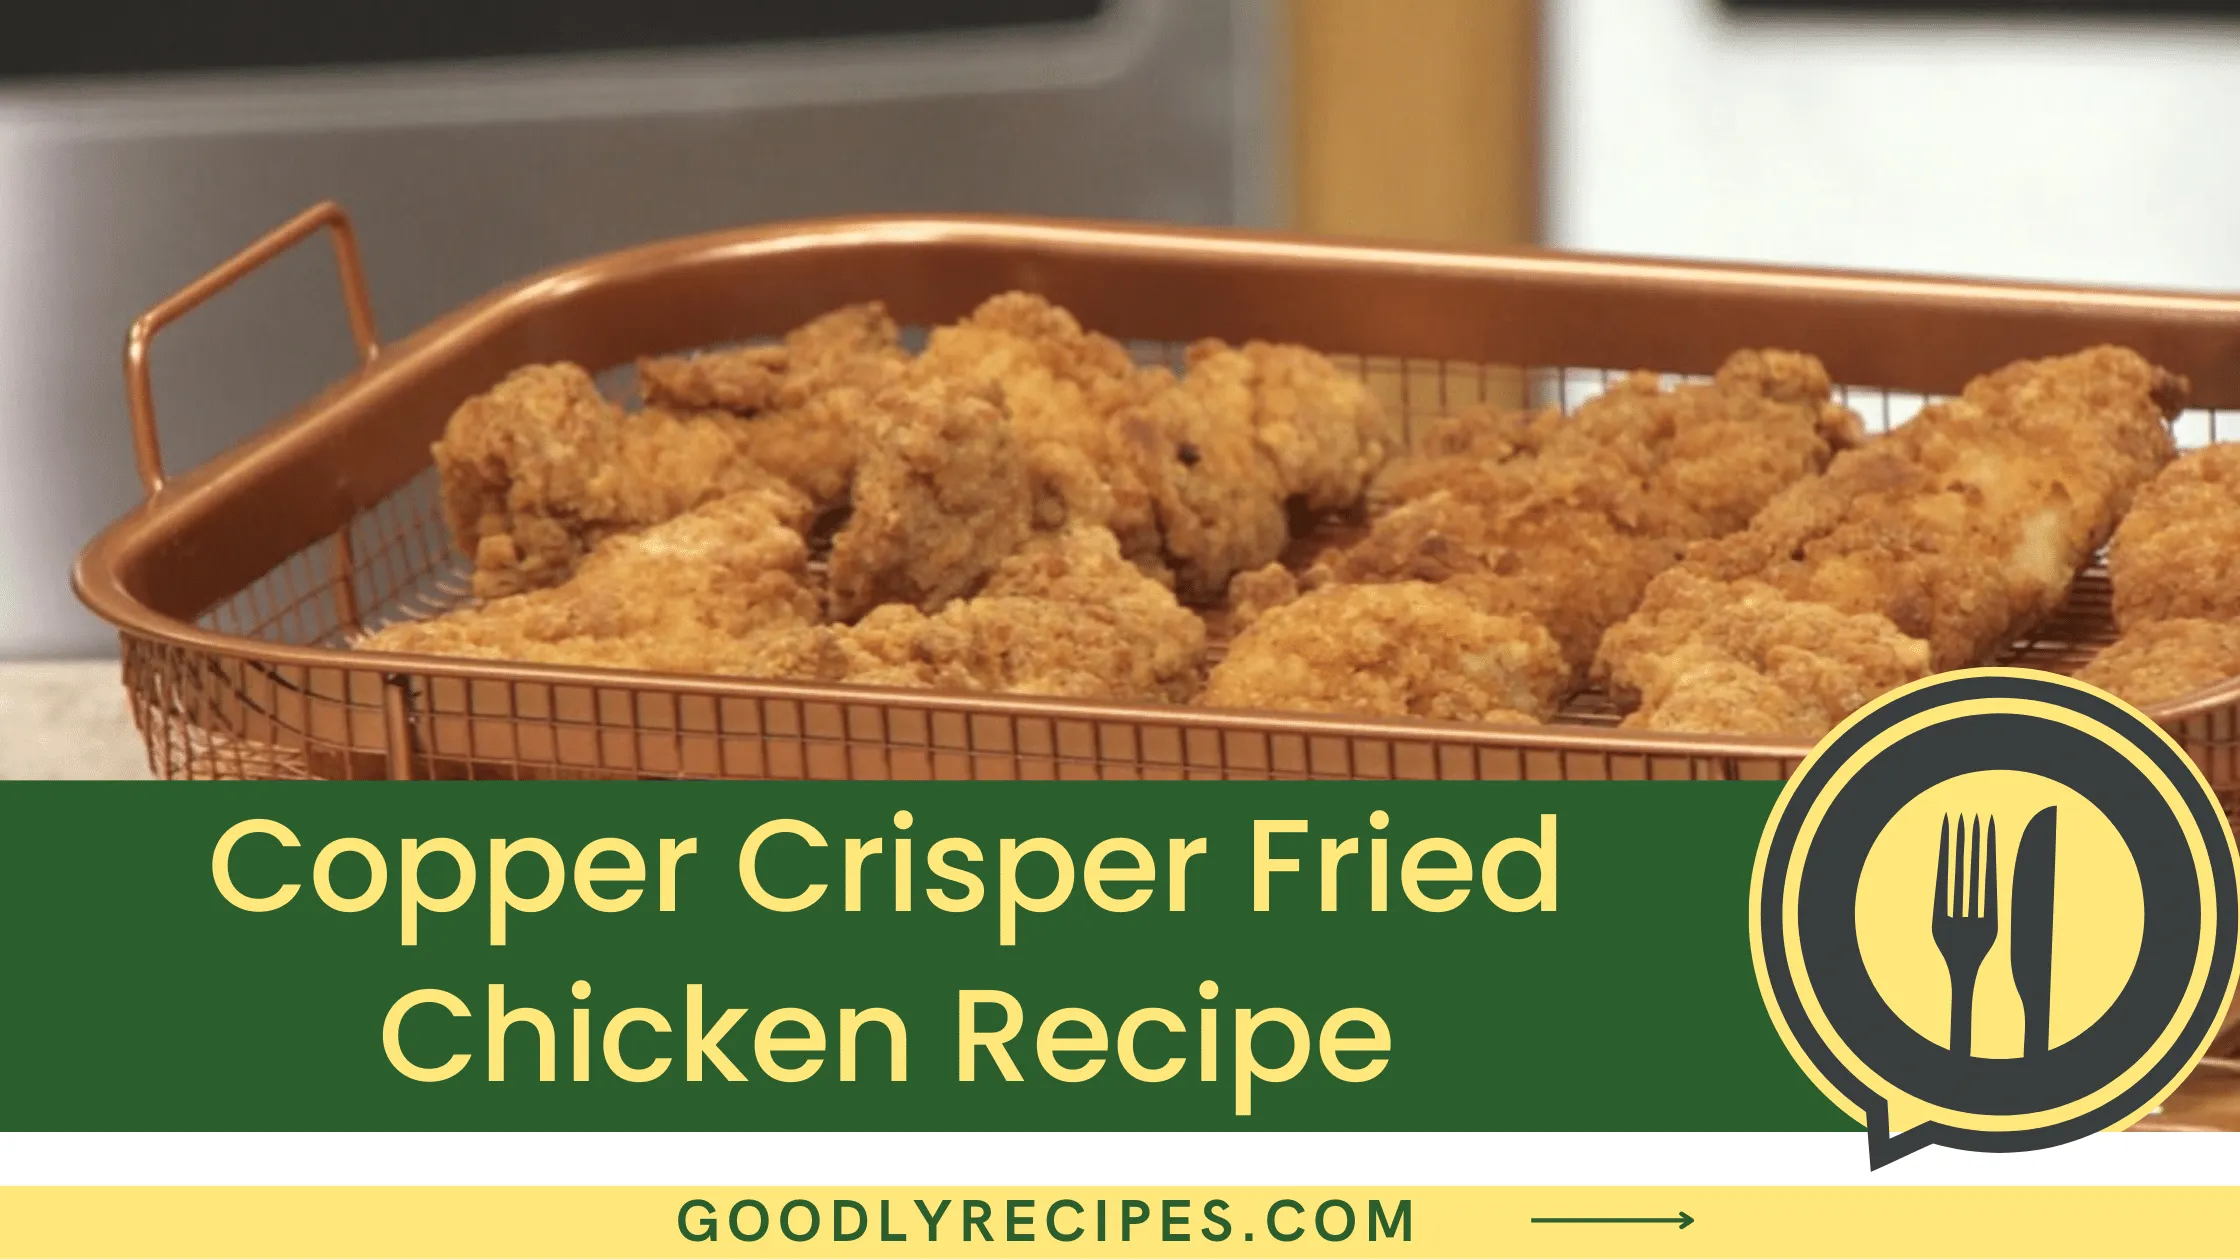 What is Copper Crisper Fried Chicken?